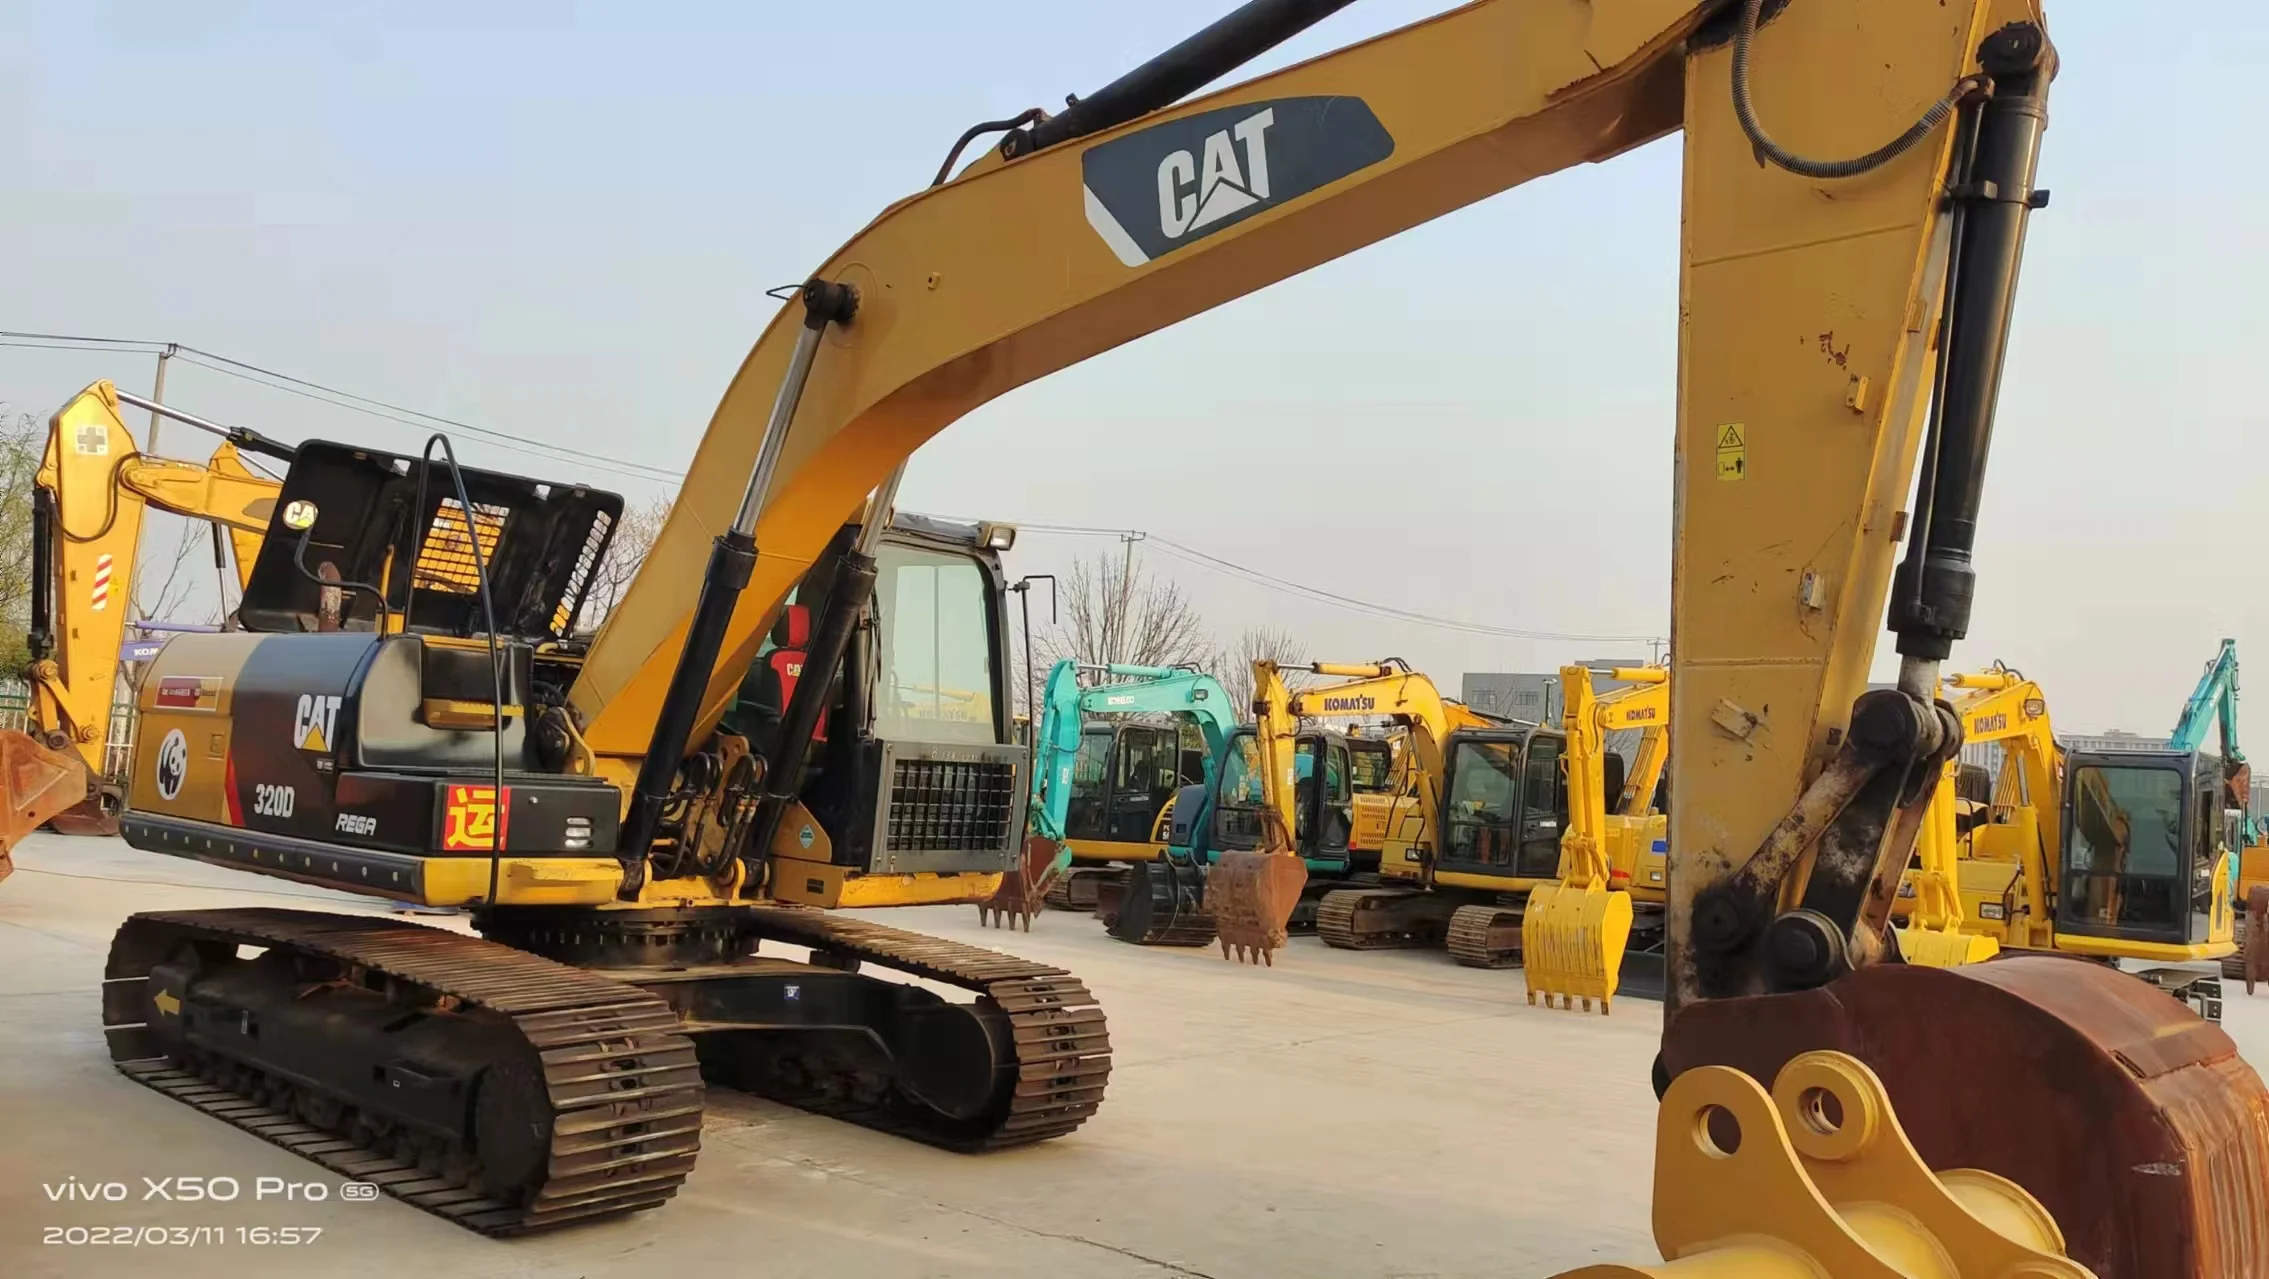 USED construction Caterpillar 320D earth moving excavator machine CAT 320B 320C 320D 330C used excavator